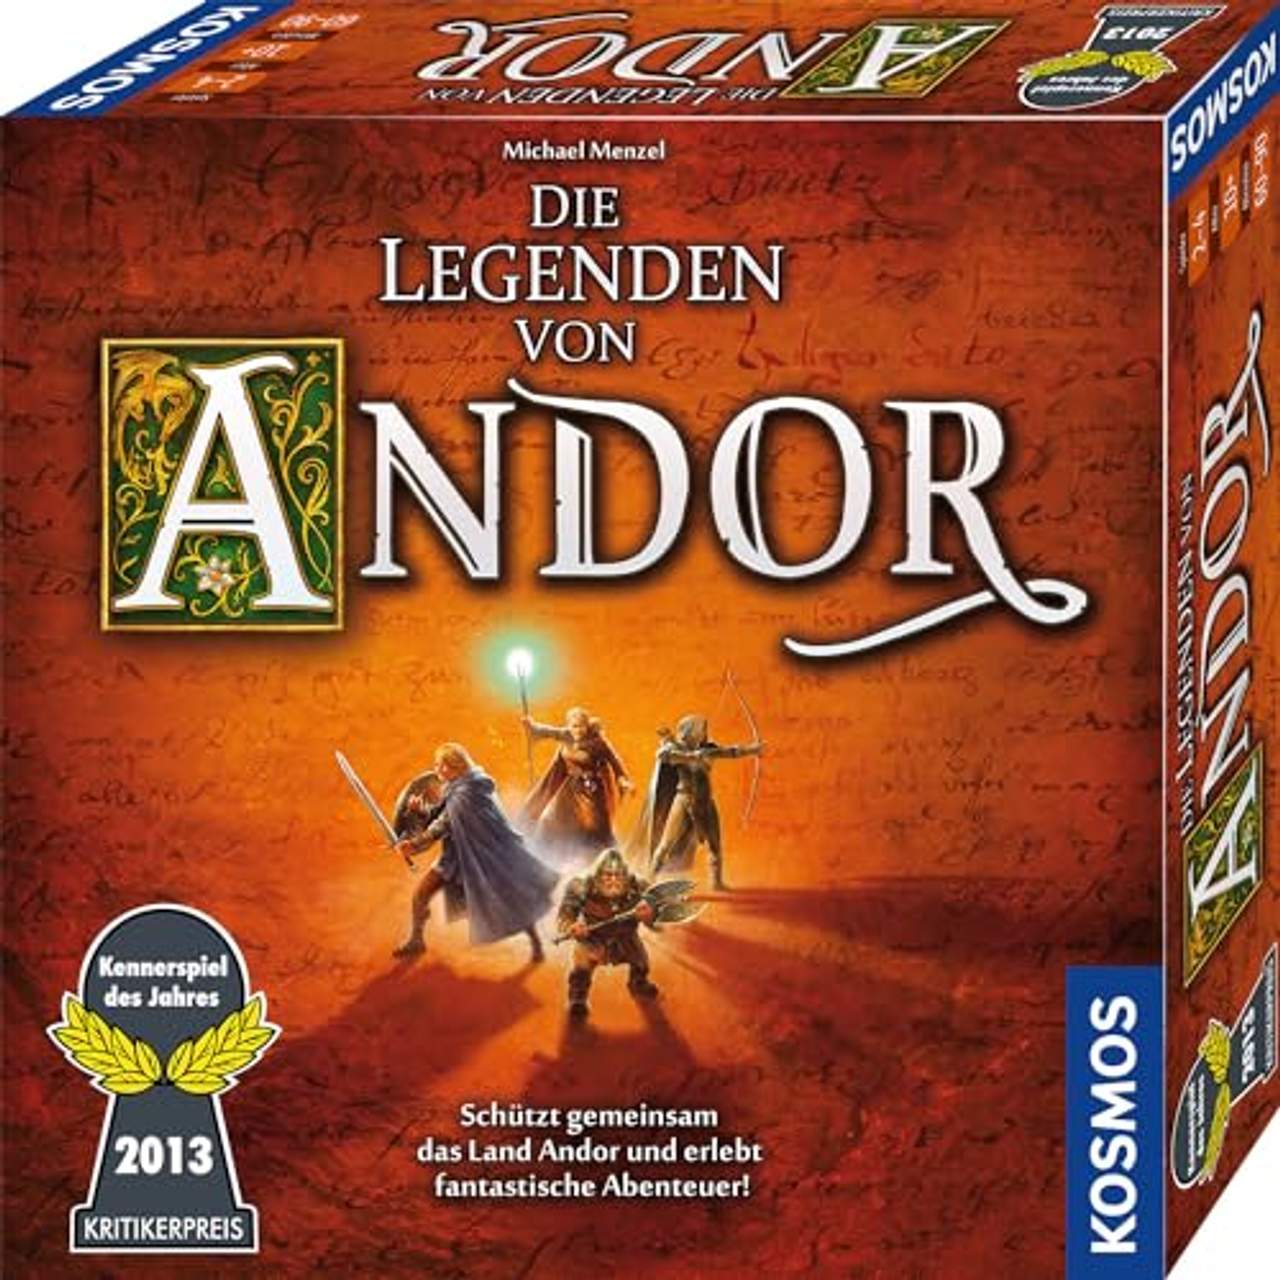 Die Legenden von Andor,  Kennerspiel des Jahres 2013